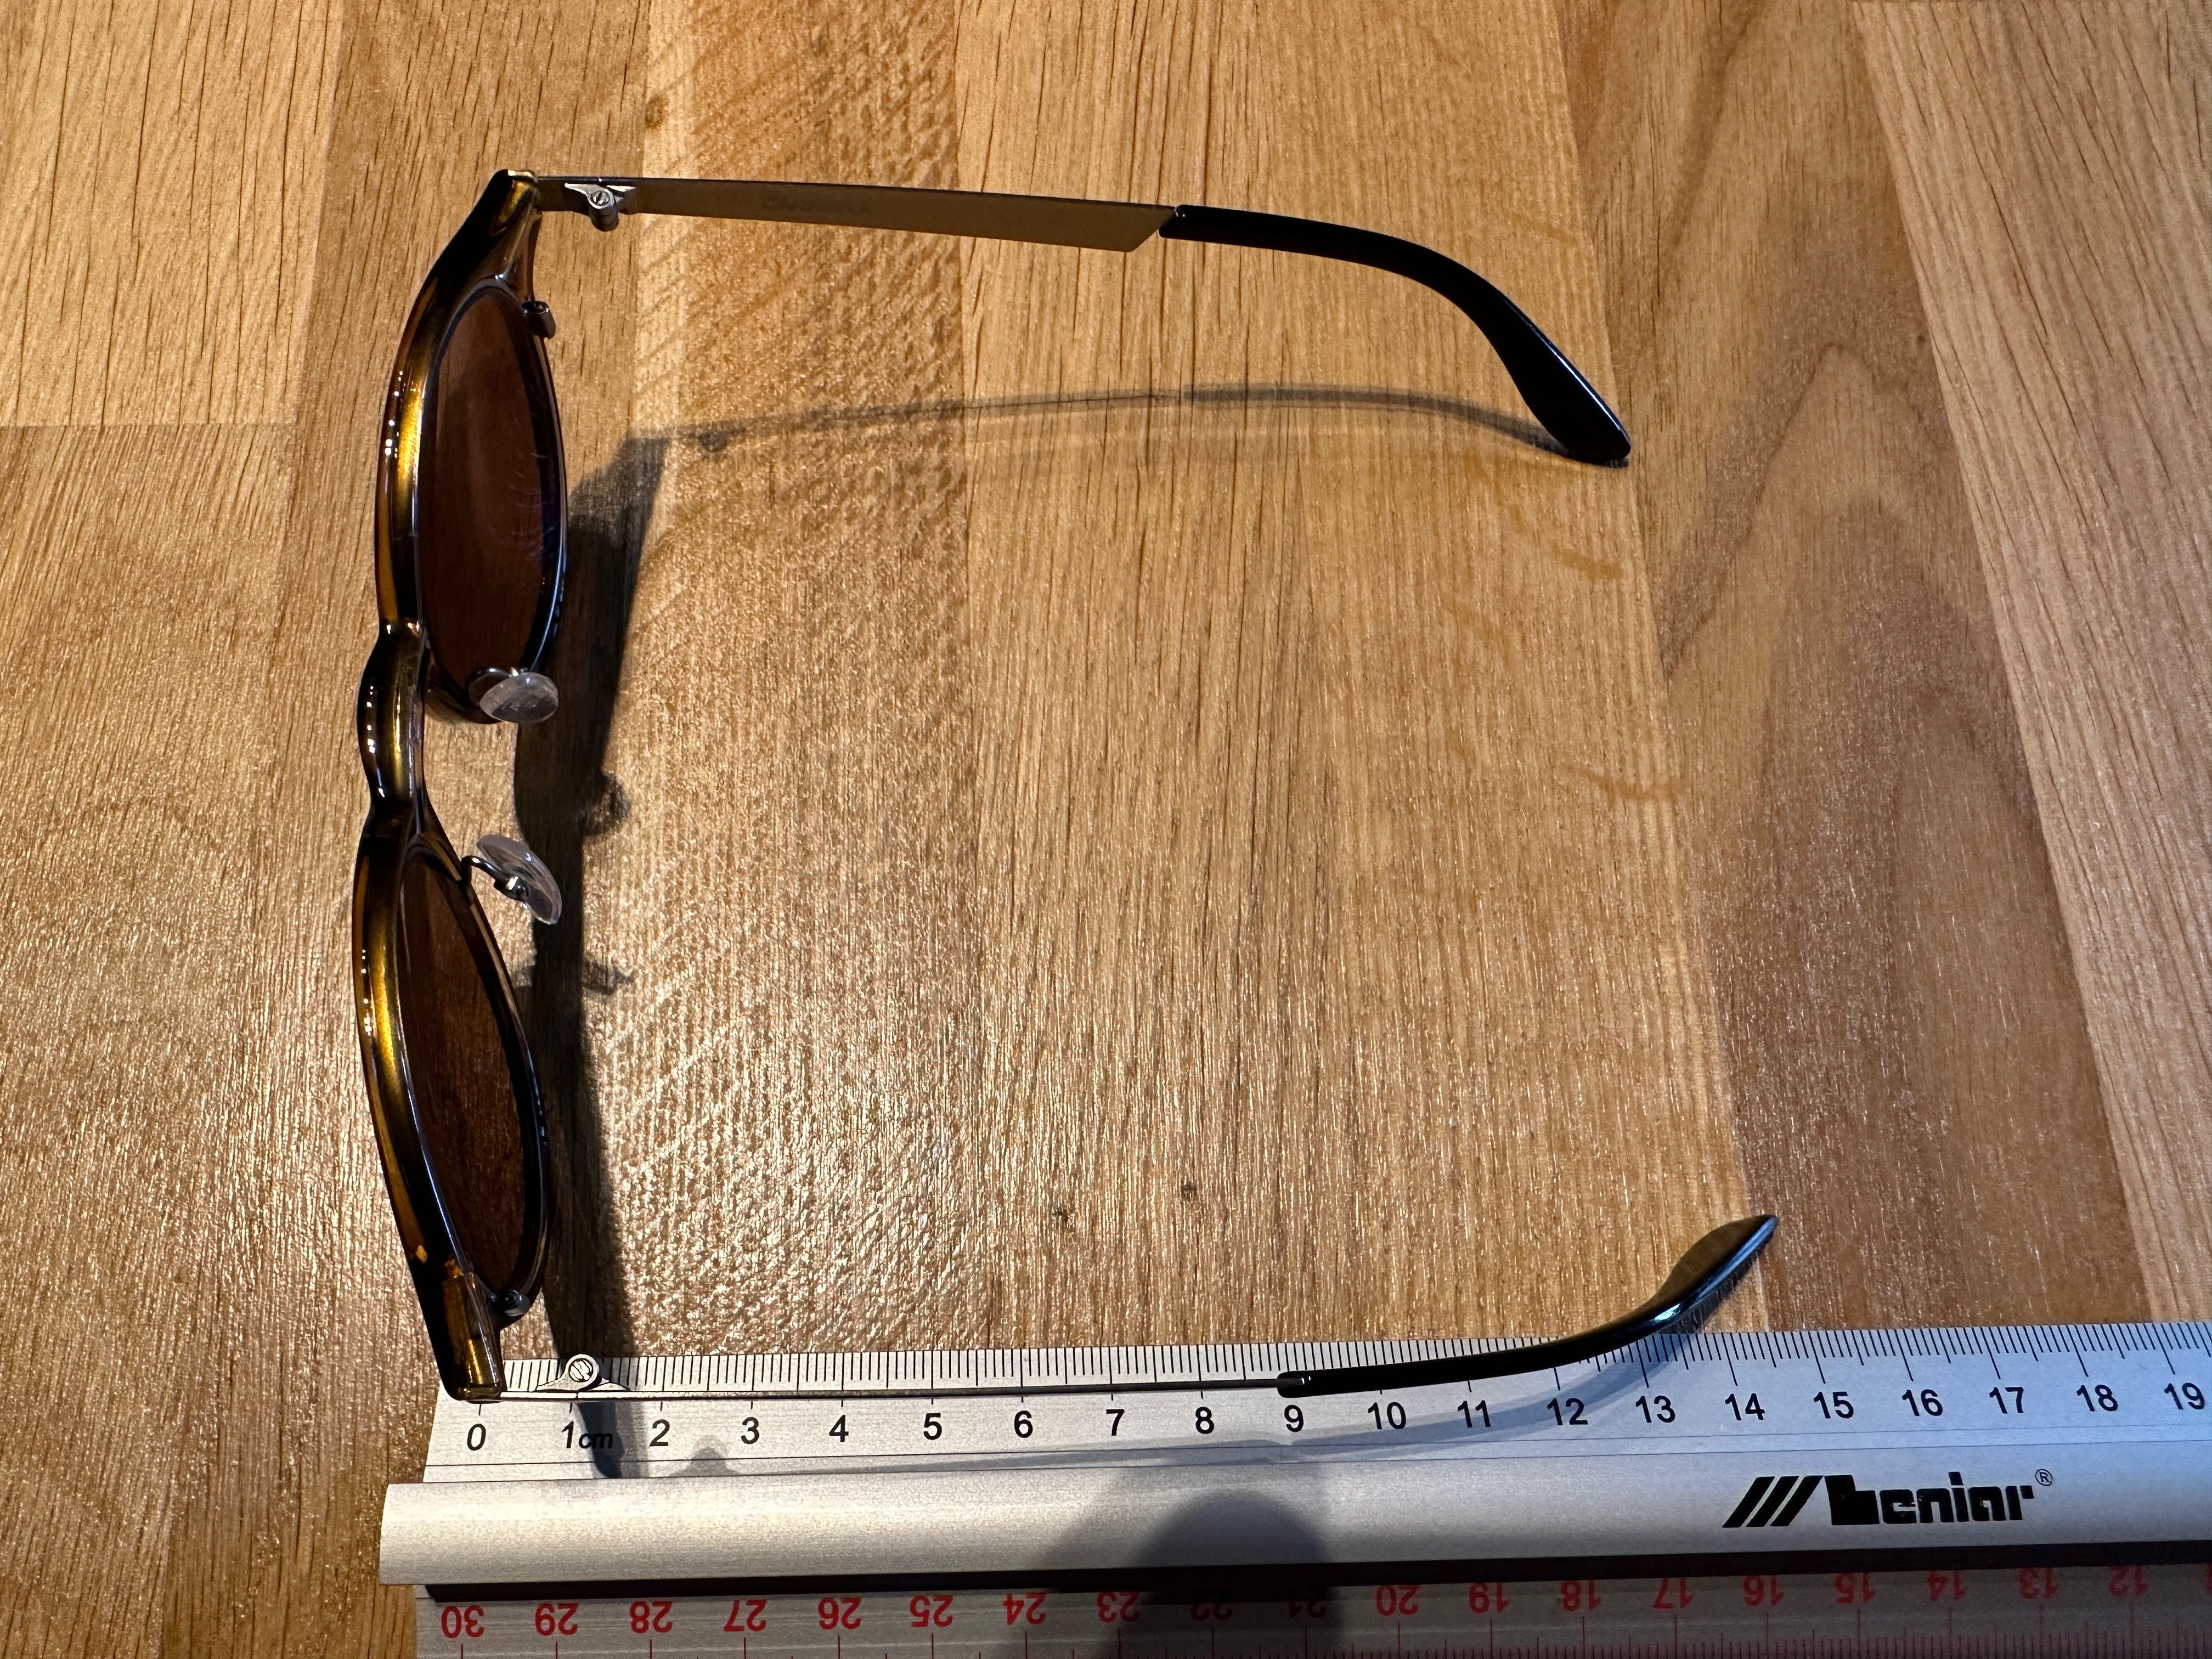 Okulary przeciwsłoneczne Carrera + soczewki Hoya Vision Japan 699 zł